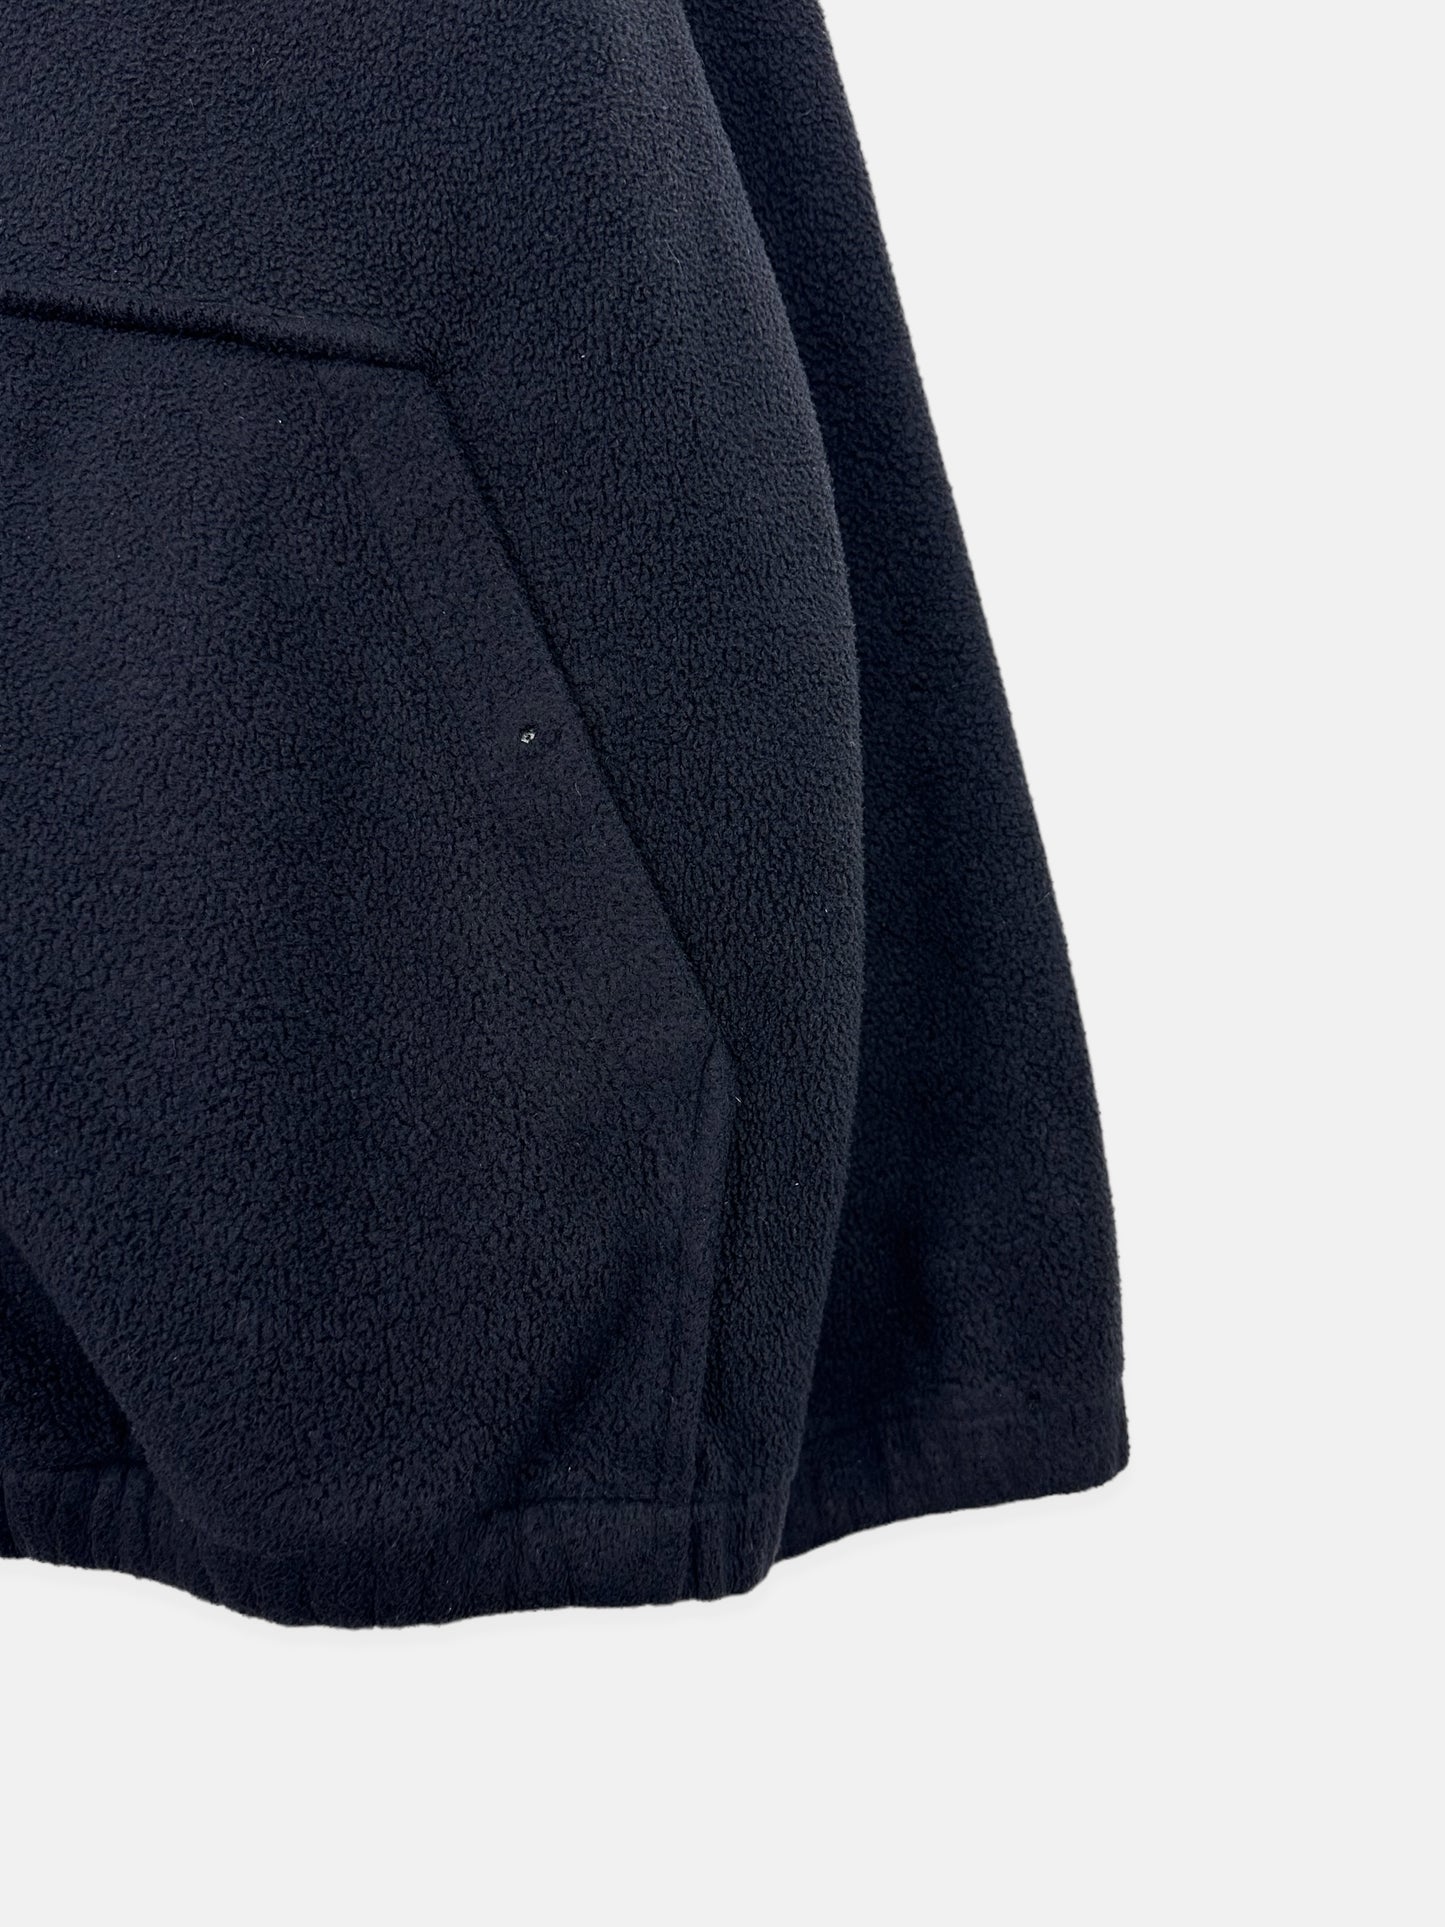 90's Ralph Lauren Embroidered Vintage Zip-Up Fleece/Jacket Size M